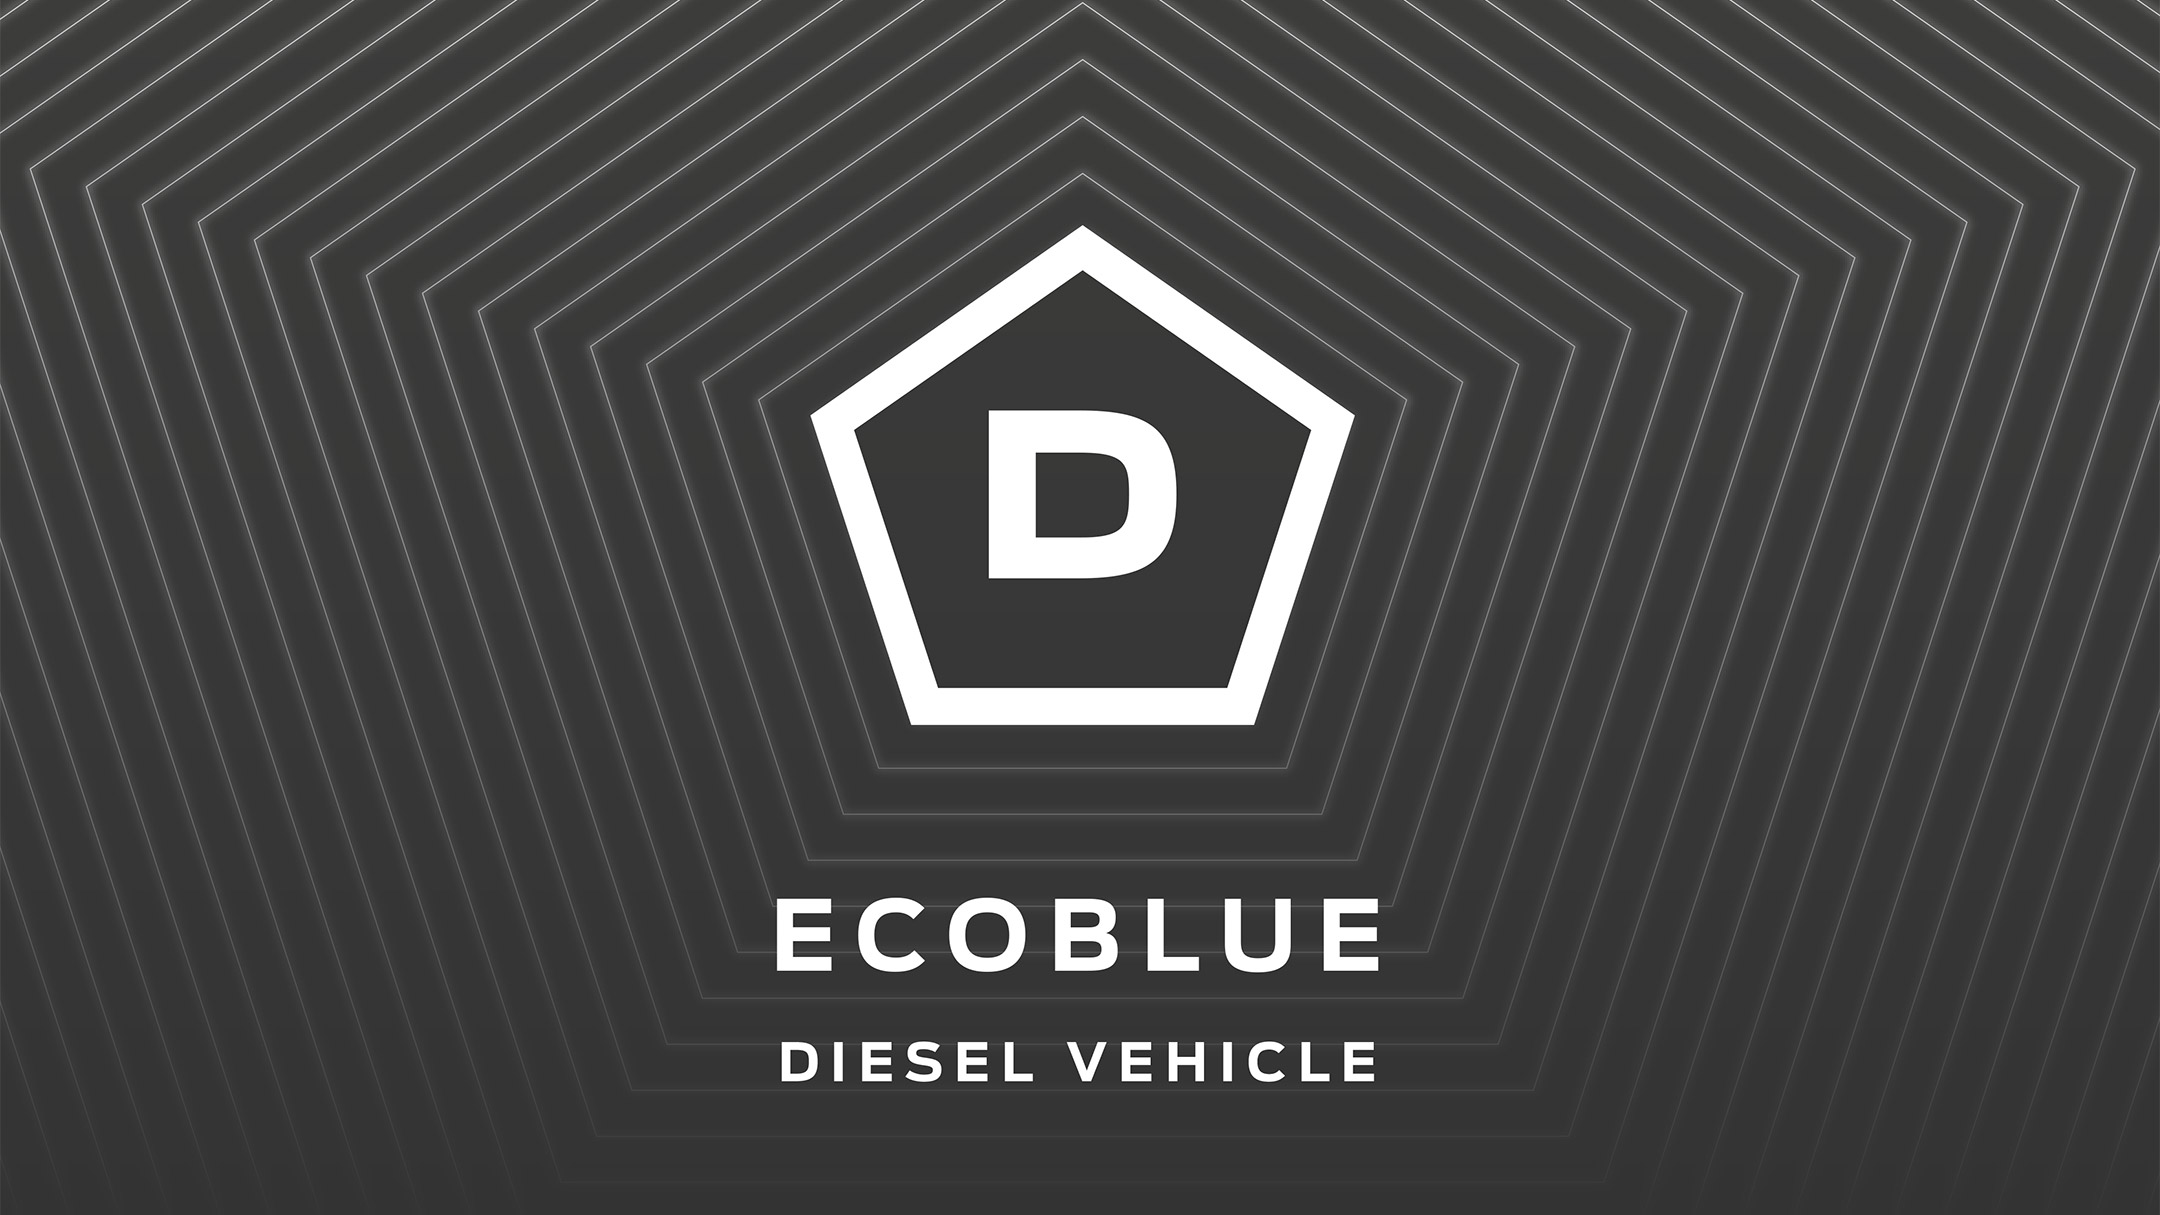 Ecoblue diesel vehicle icon